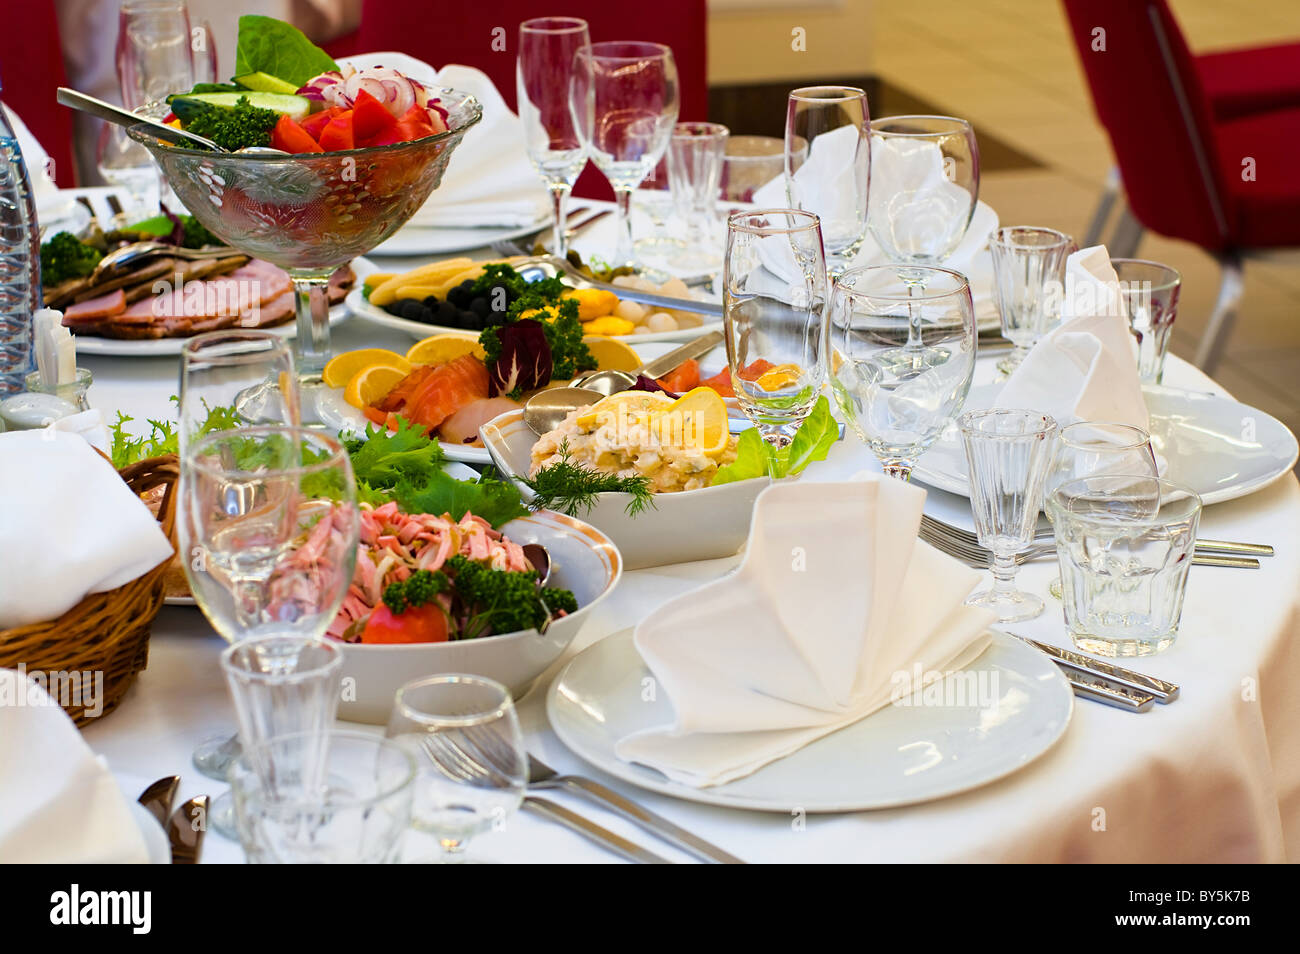 Plaques avec collation froide sur la table, des couverts pour le dîner, serviette blanche, selective focus. Banque D'Images